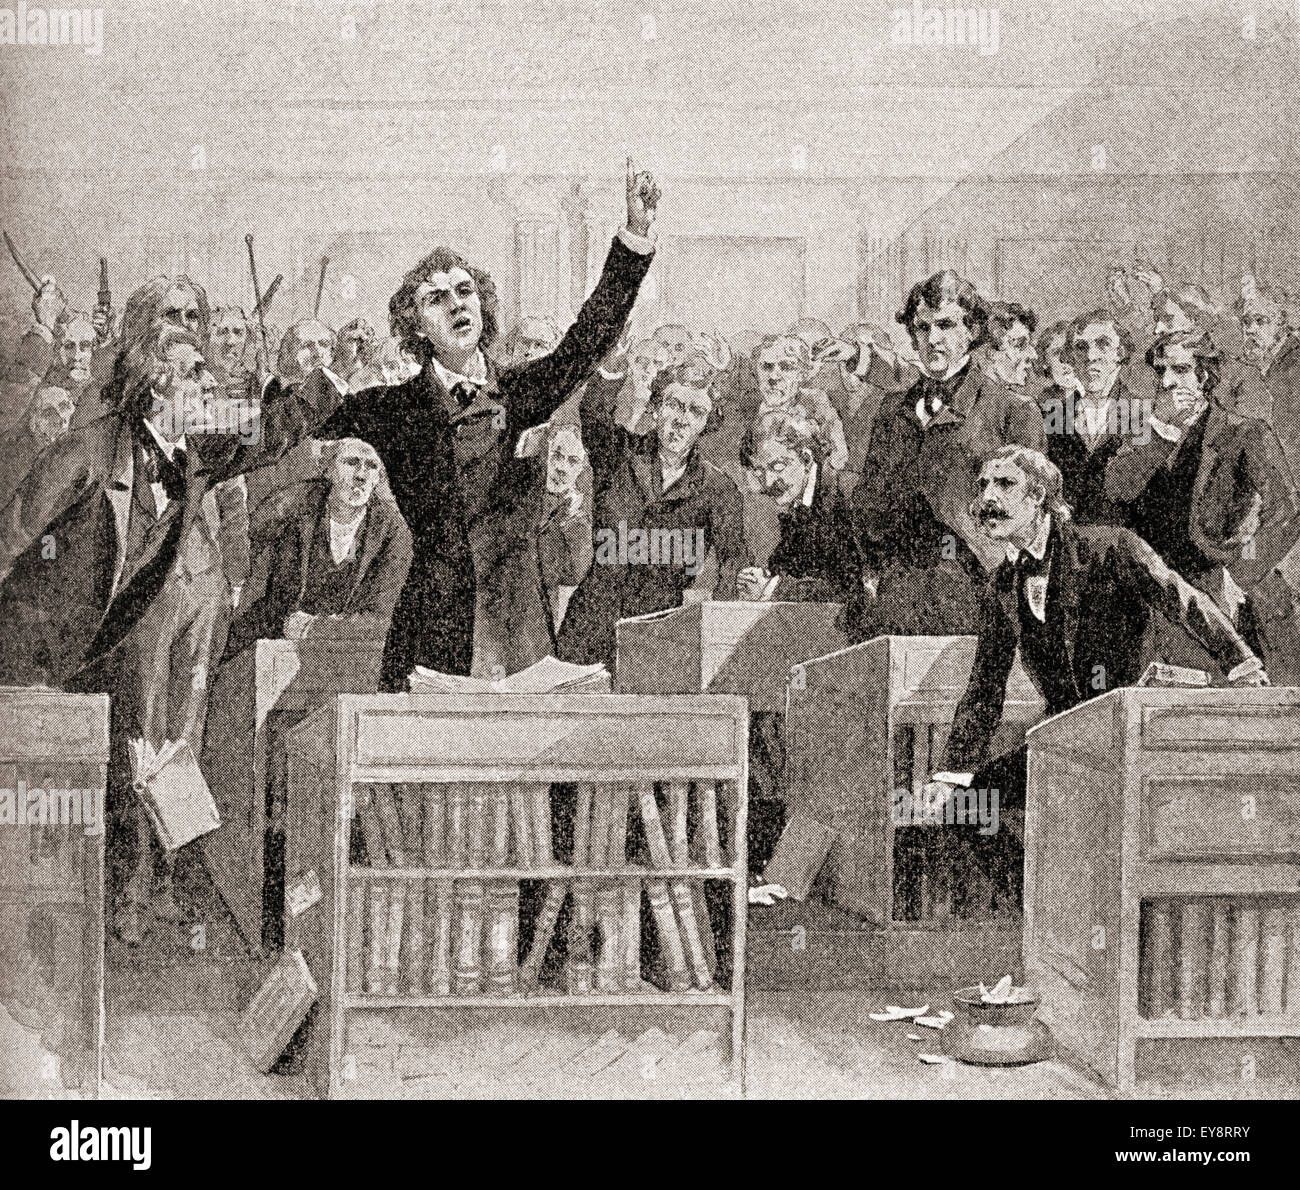 Un débat houleux sur la question de l'esclavage au sein du Congrès américain, 1850. Banque D'Images